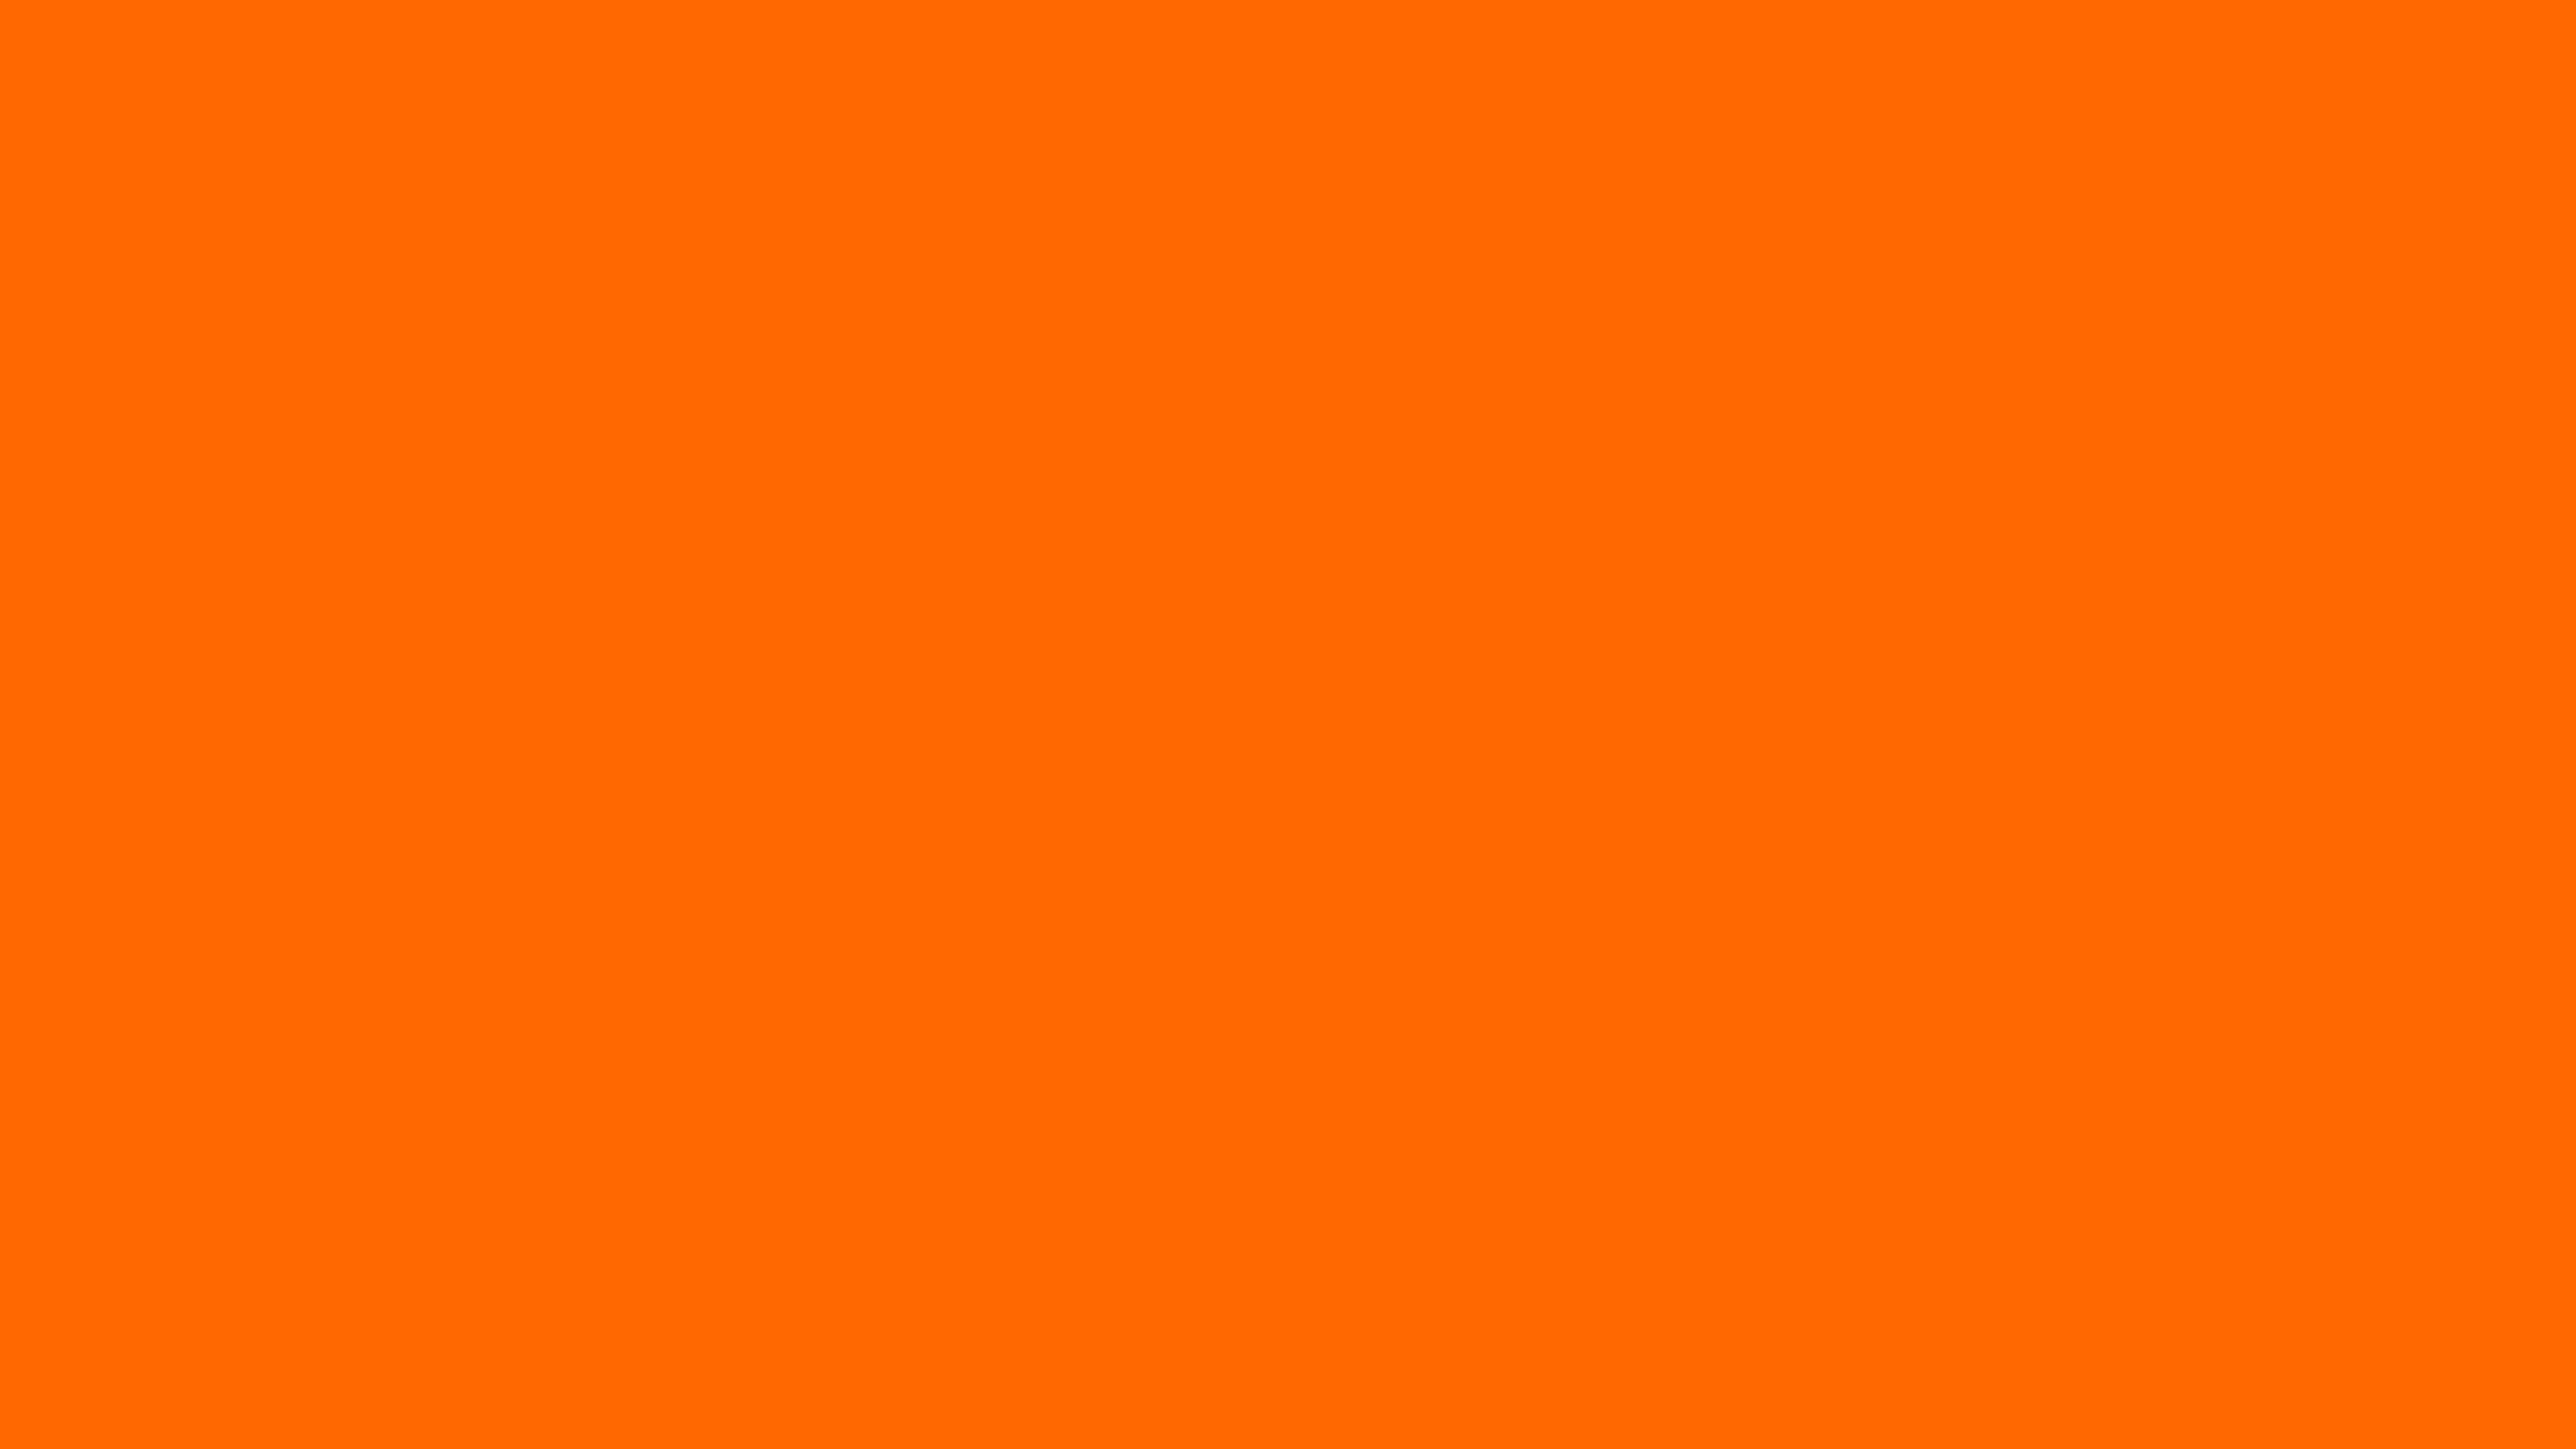 Nền màu cam sáng Blaze Orange an toàn 7680x4320 sẽ làm cho bức ảnh của bạn trở nên chân thực và sống động hơn bao giờ hết. Với độ phân giải cực cao là 7680x4320 pixel, bạn sẽ có được một bức ảnh rõ nét và chi tiết đến từng milimet.